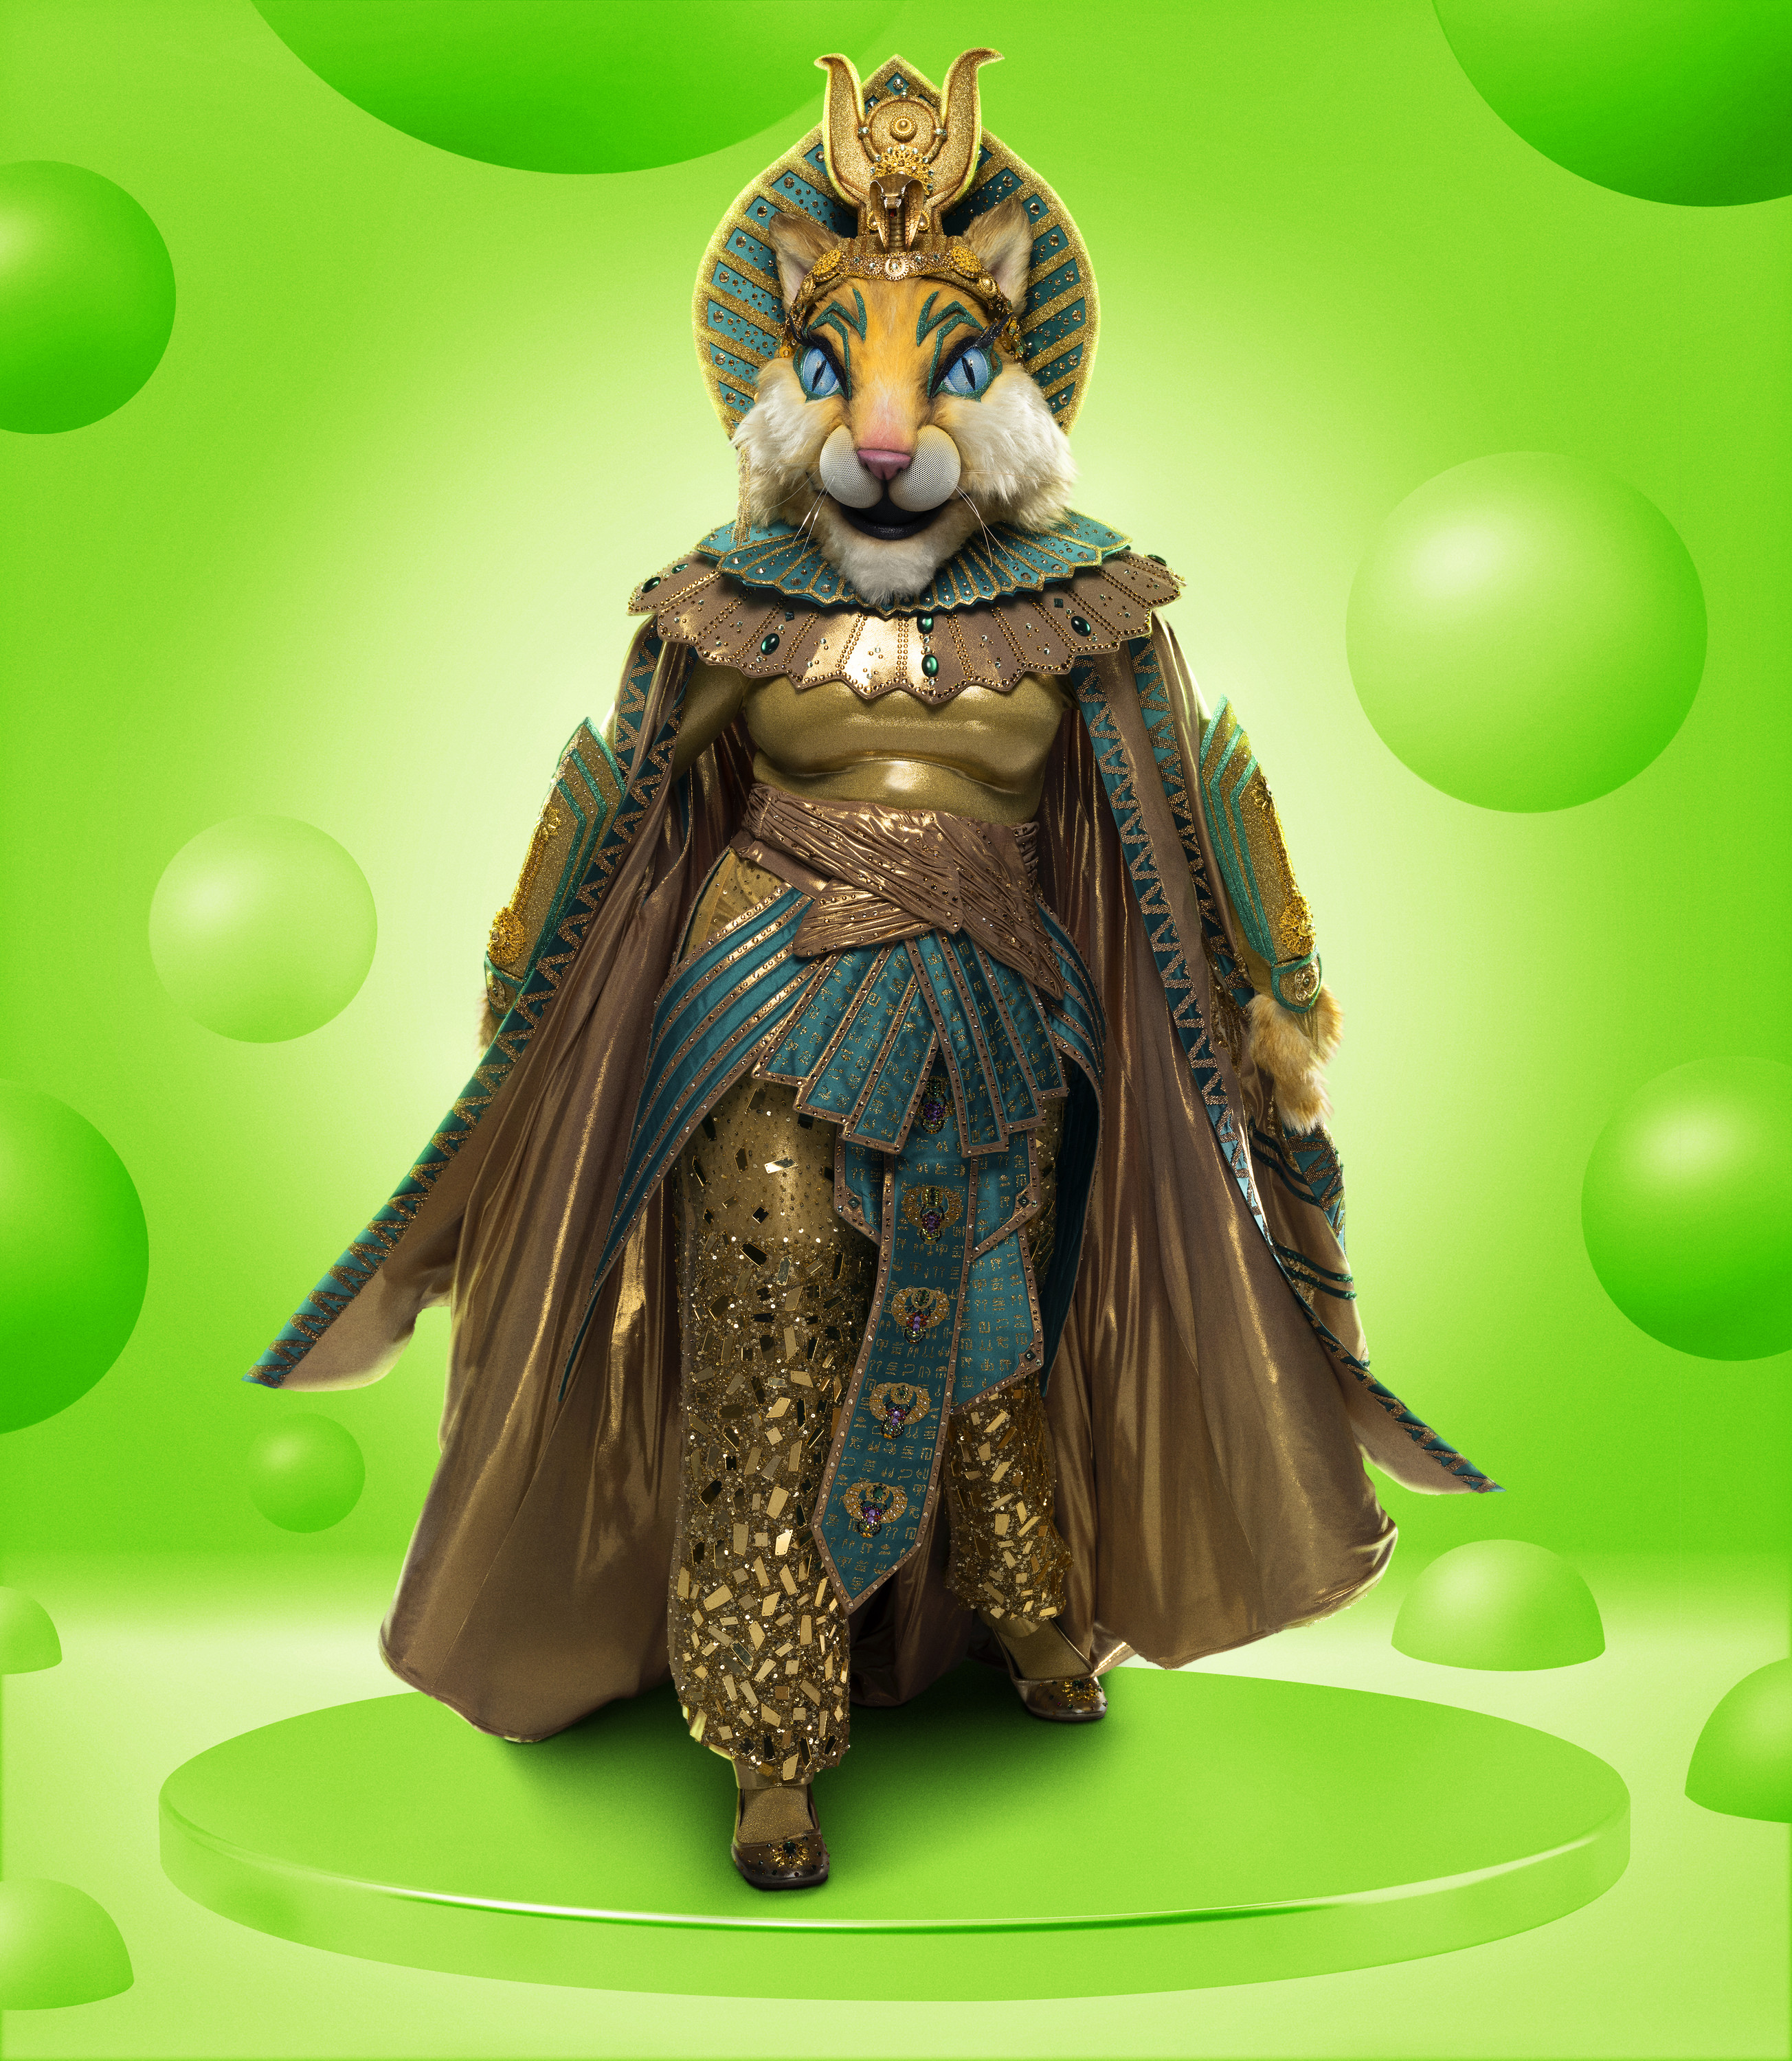 Promo image of Miss Cleocatra on The Masked Singer season 11